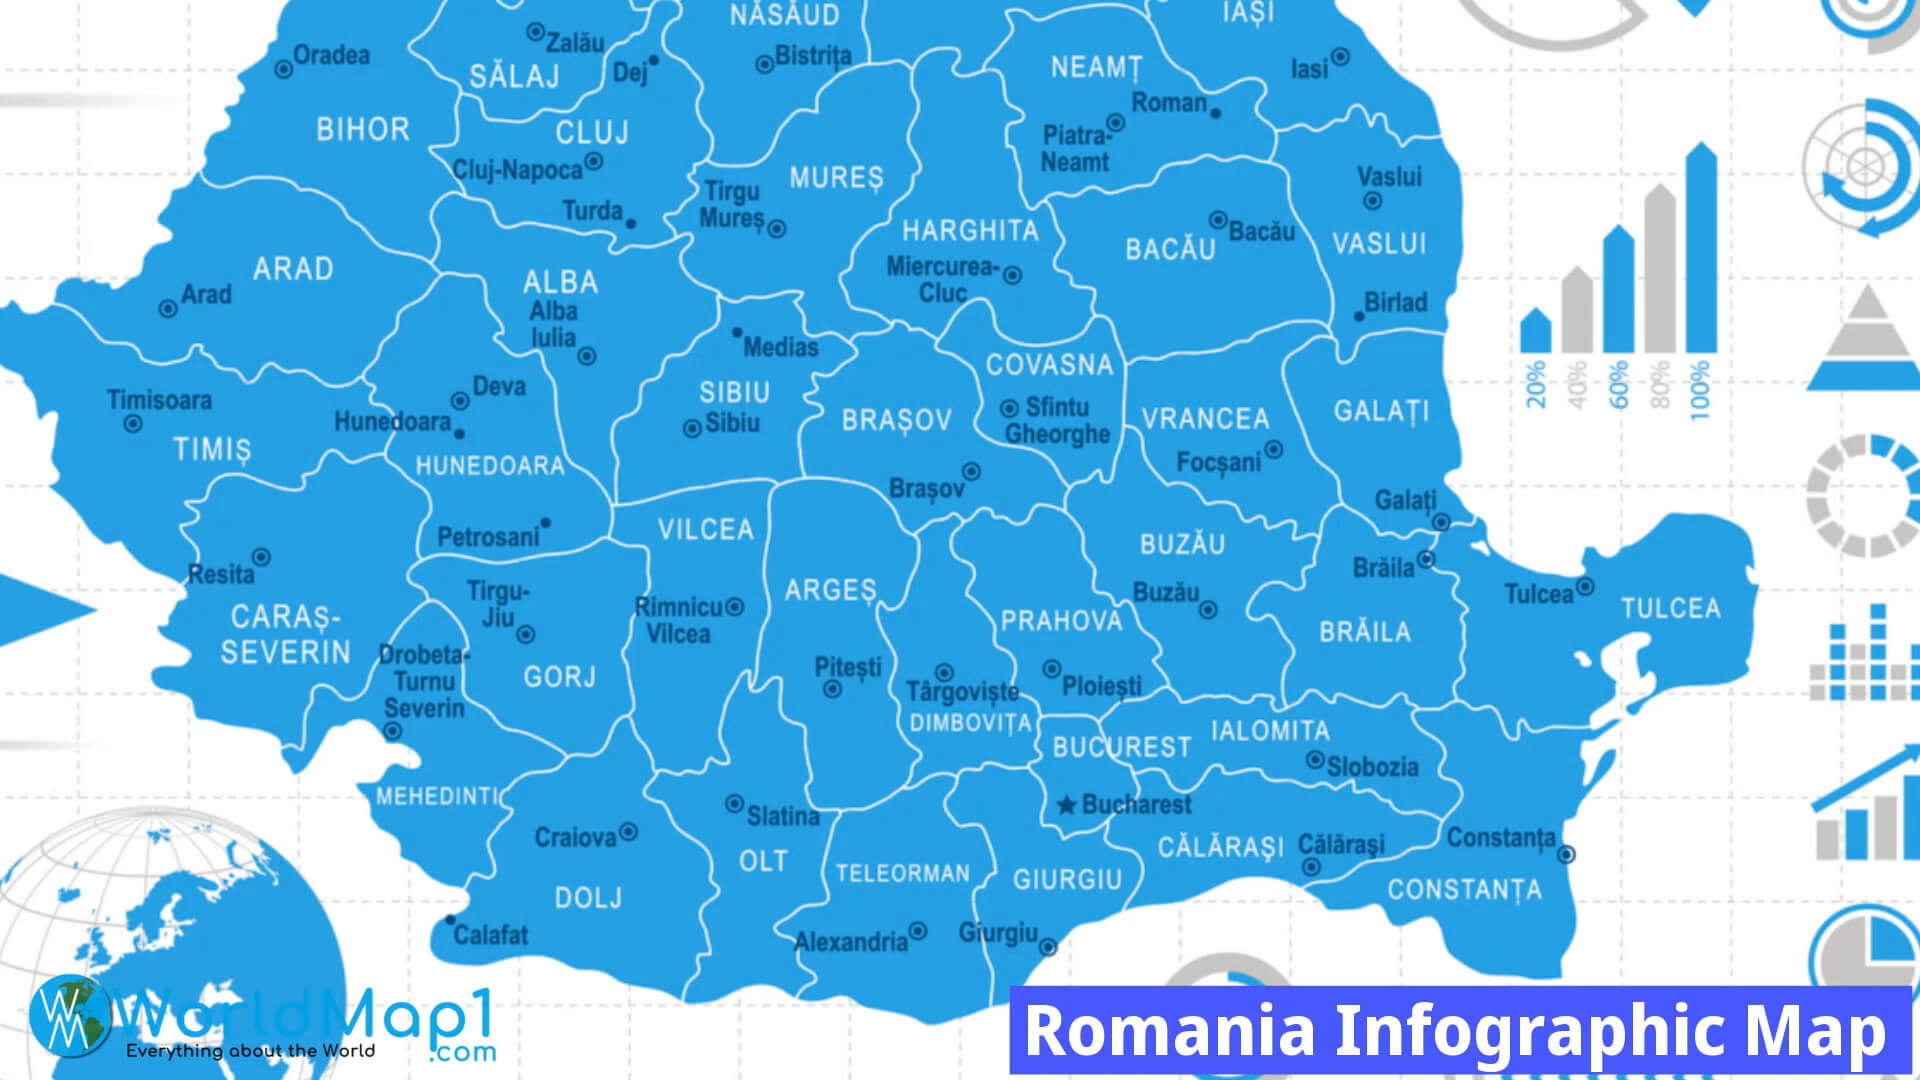 Romania Infographic Map